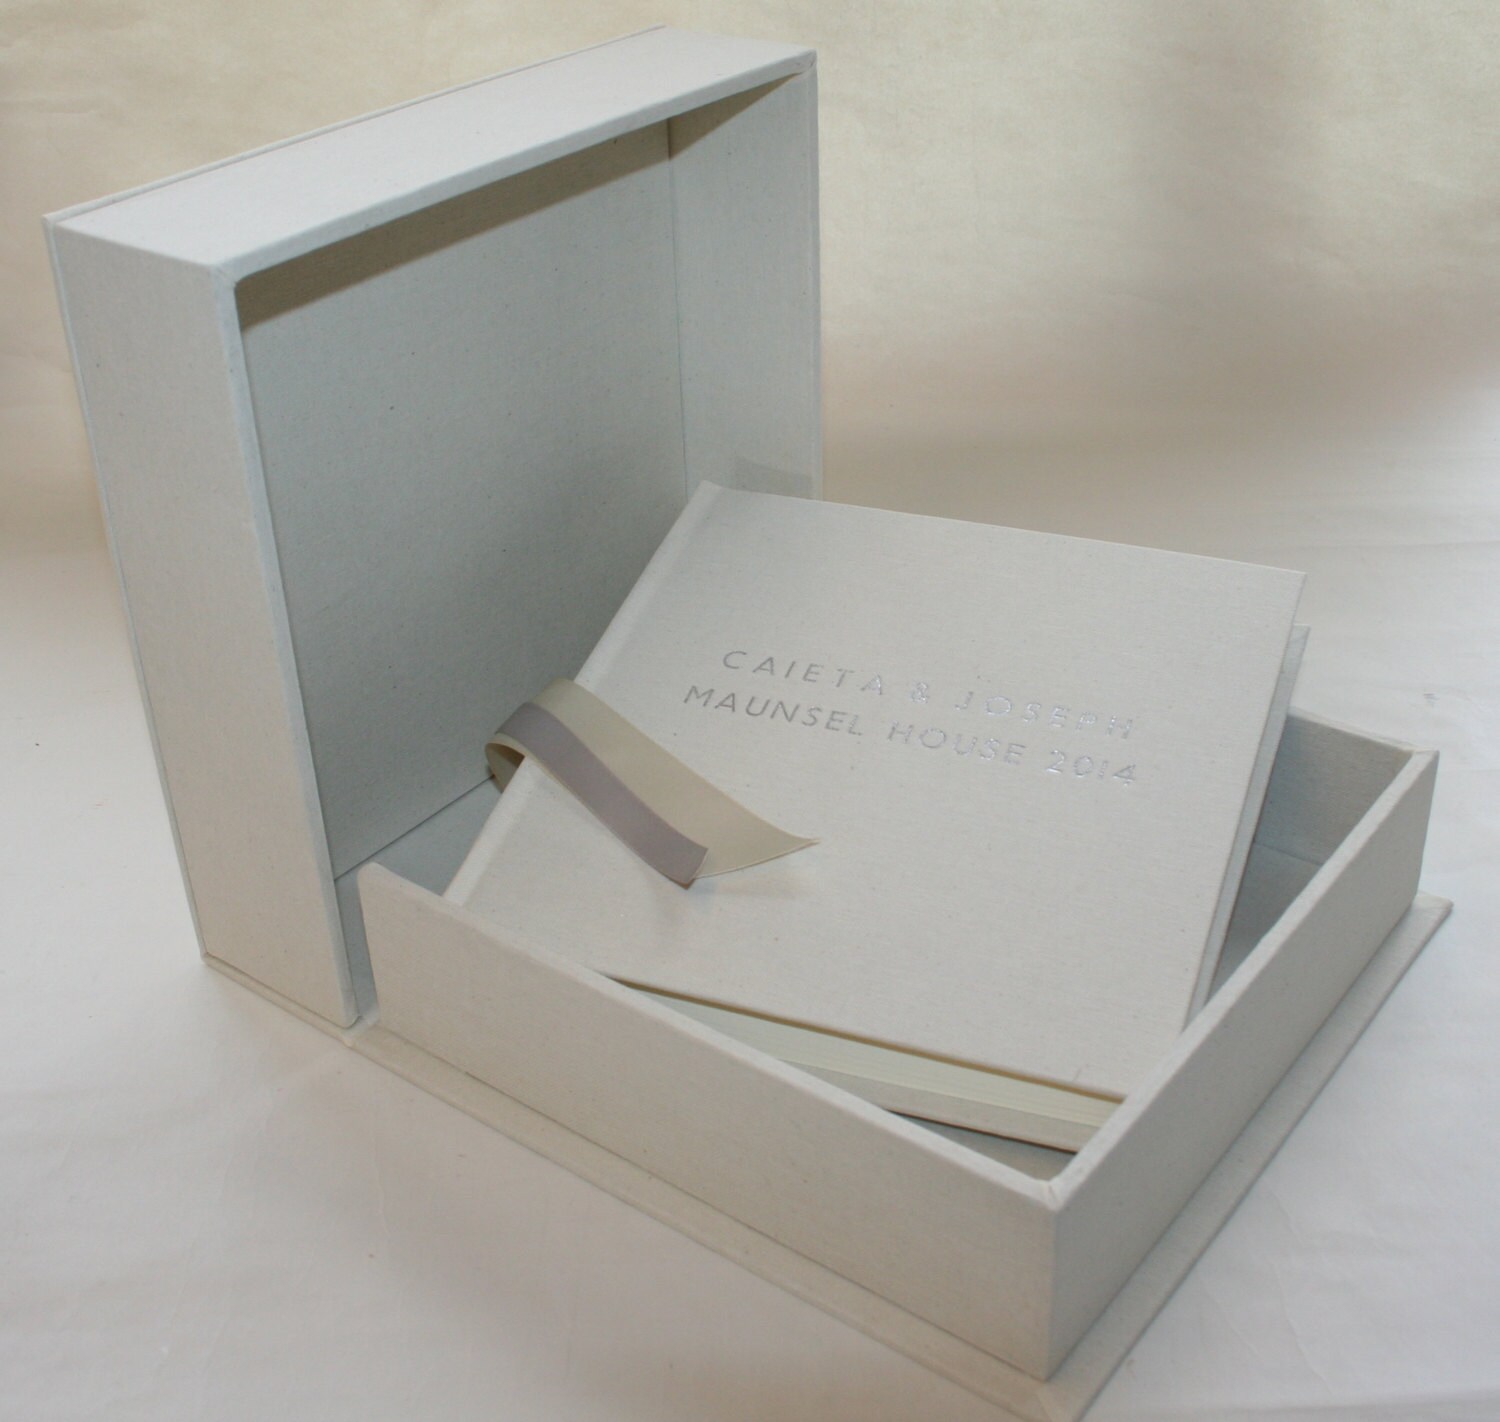 9 x 9 Bespoke wedding album & storage box bound in